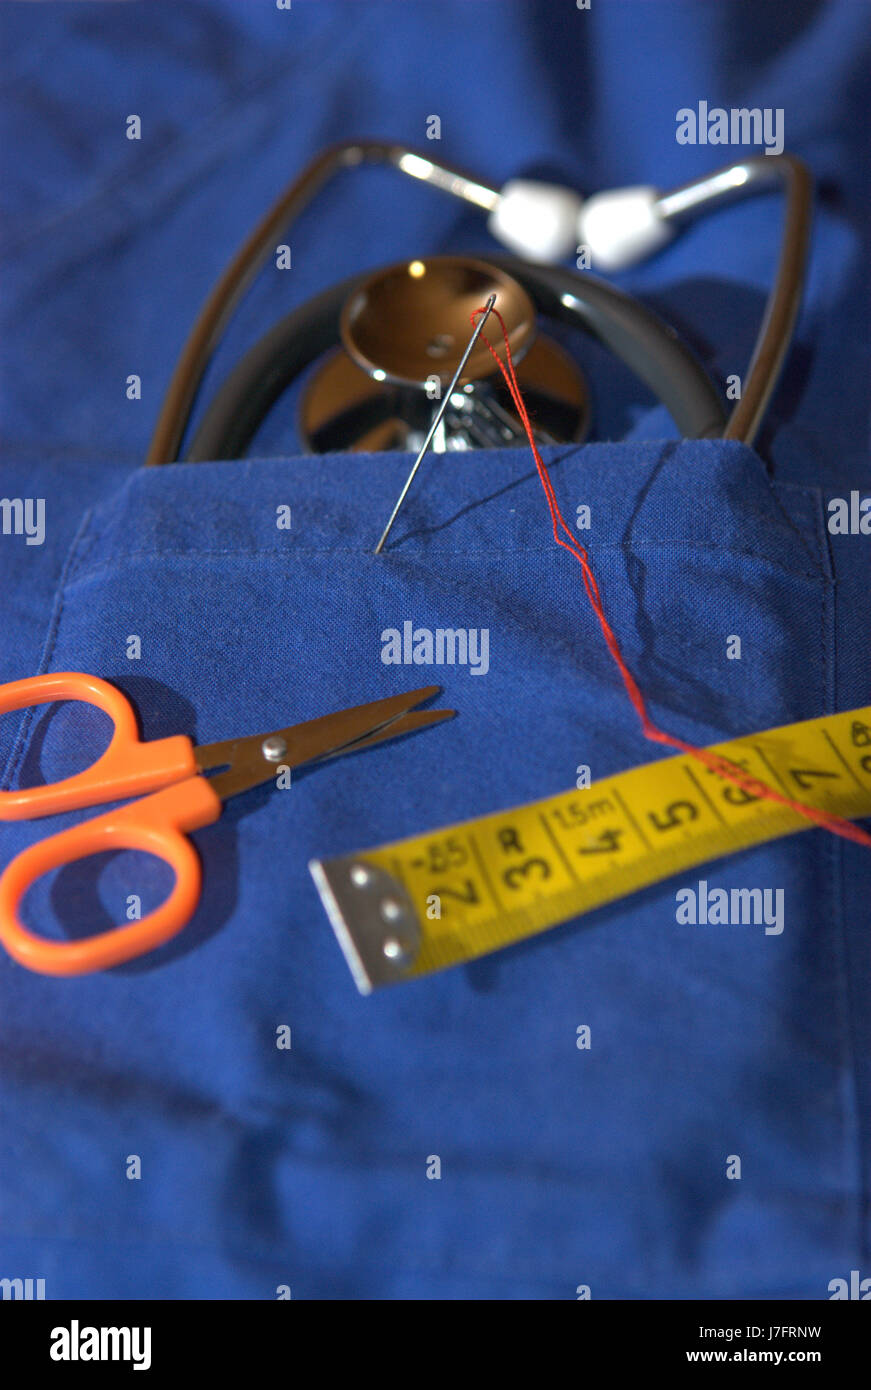 Médecin Médecin praticien médical infirmier sured vêtements mesure mesurée Banque D'Images